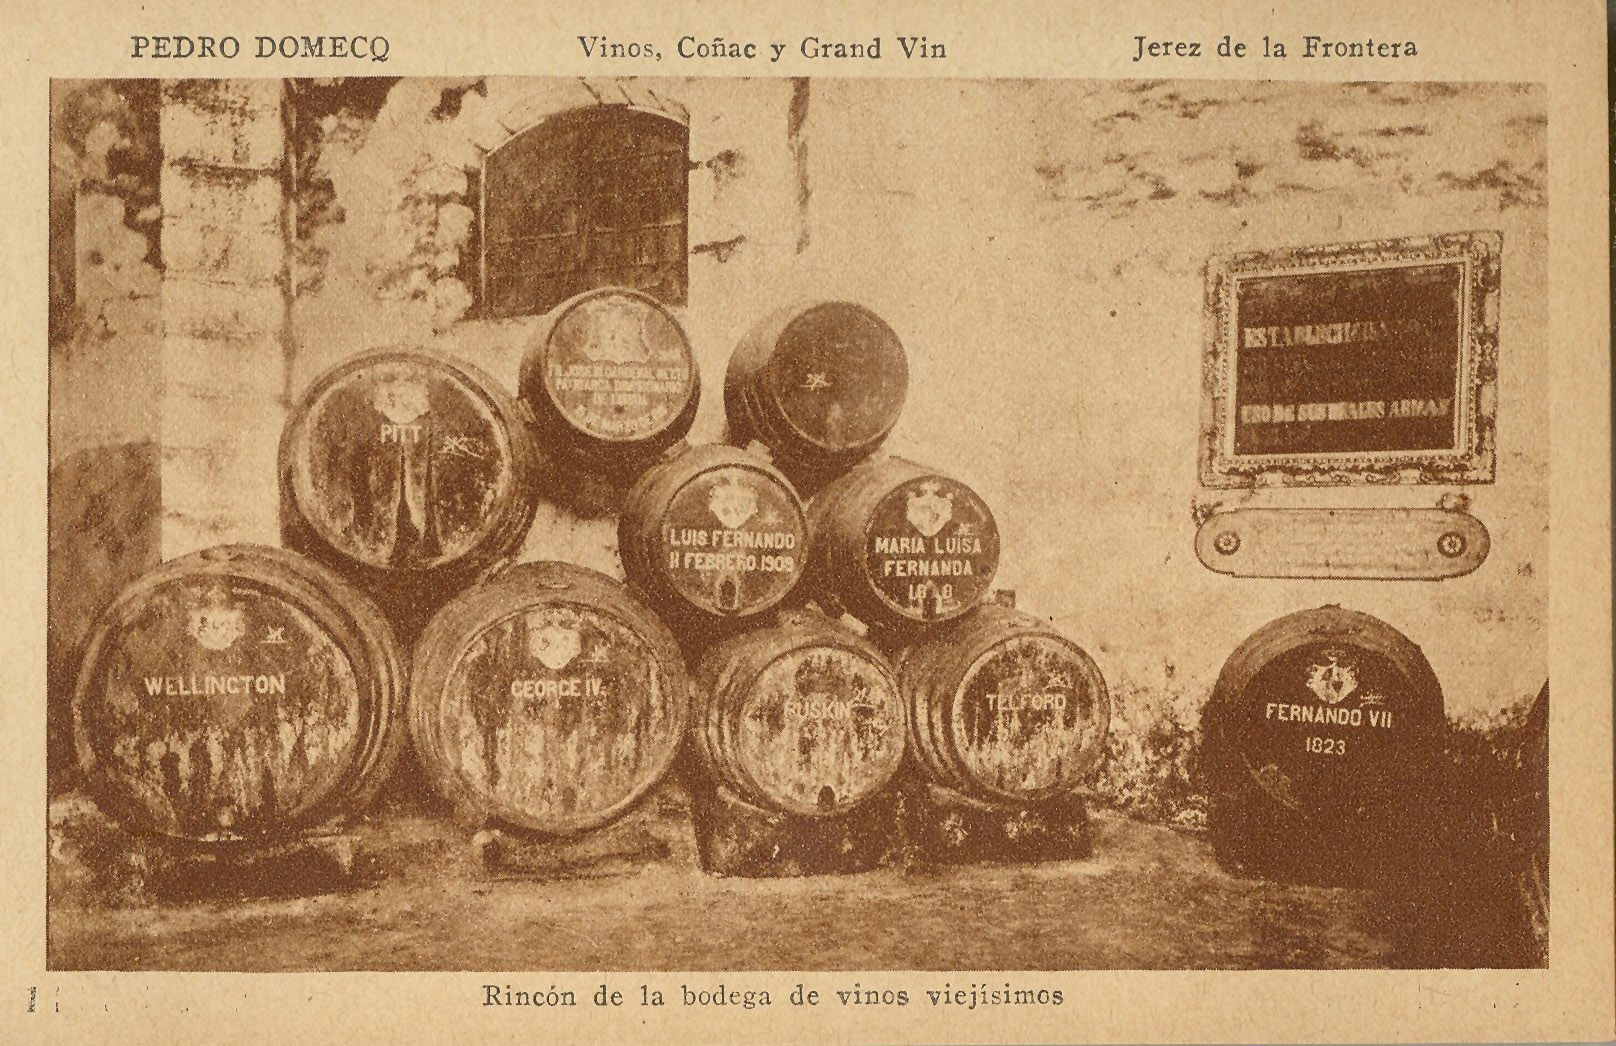 JEREZ DE LA FRONTERA: Rincón de la bodega de vinos viejísimos.1924 (DJ07689)